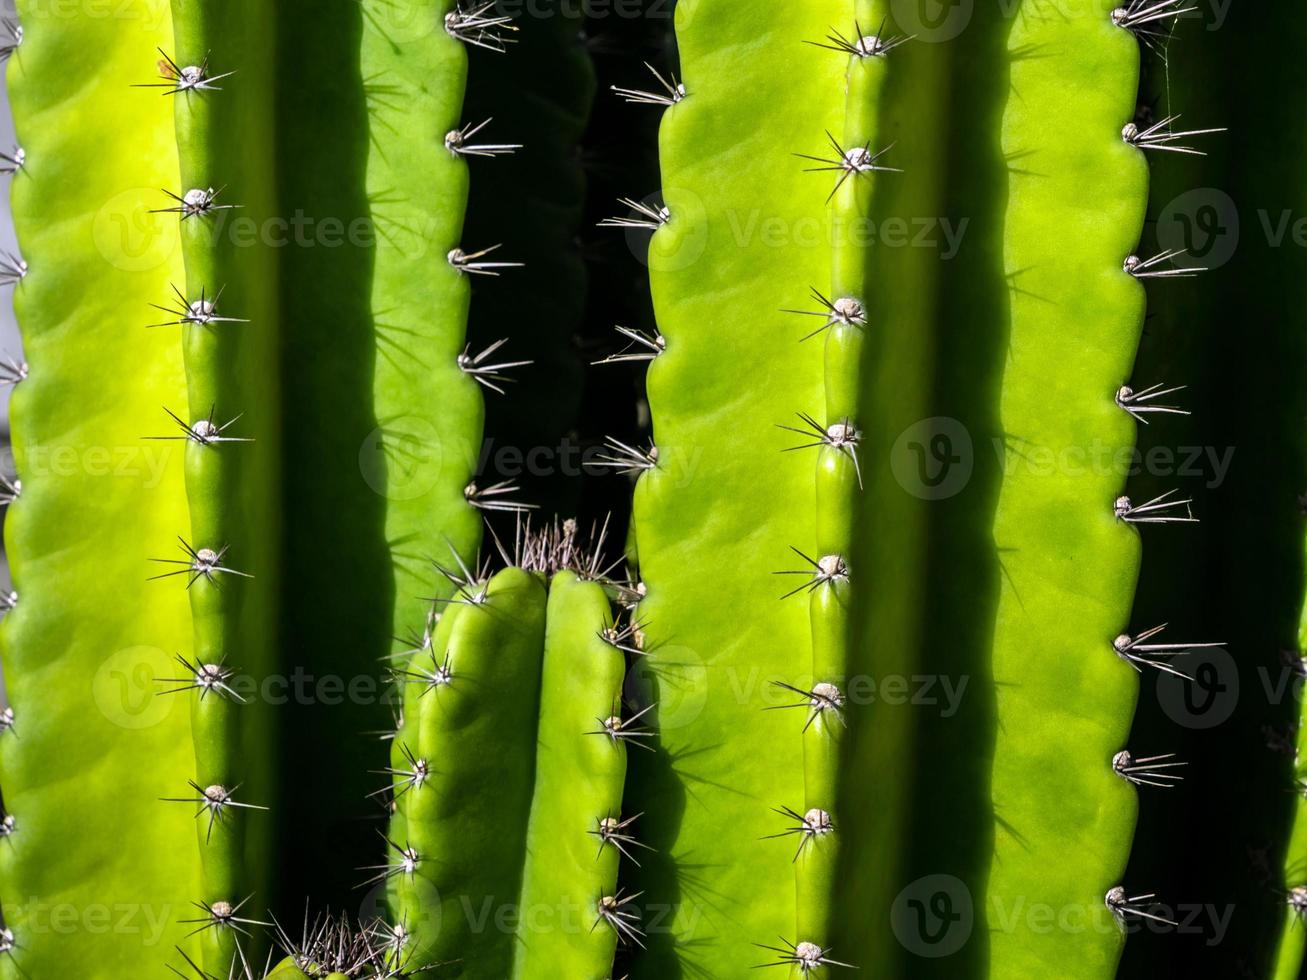 groene achtergrond door dikke stengels en stekelige stekels van cactus foto